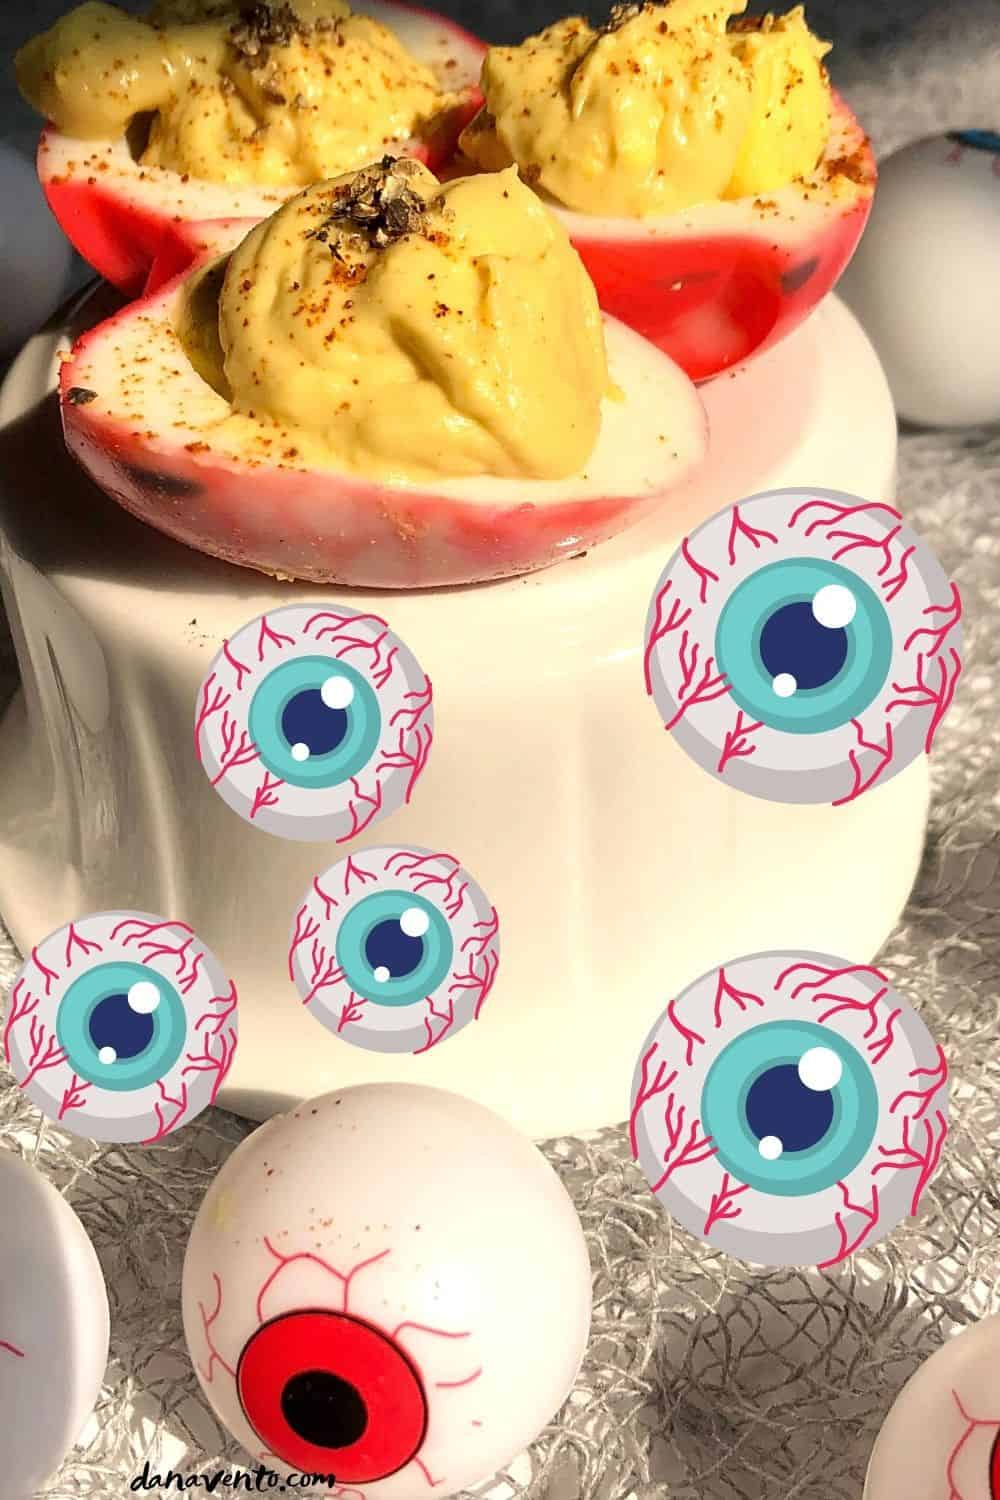 bloodshot deviled egg eyes with extra eyeballs